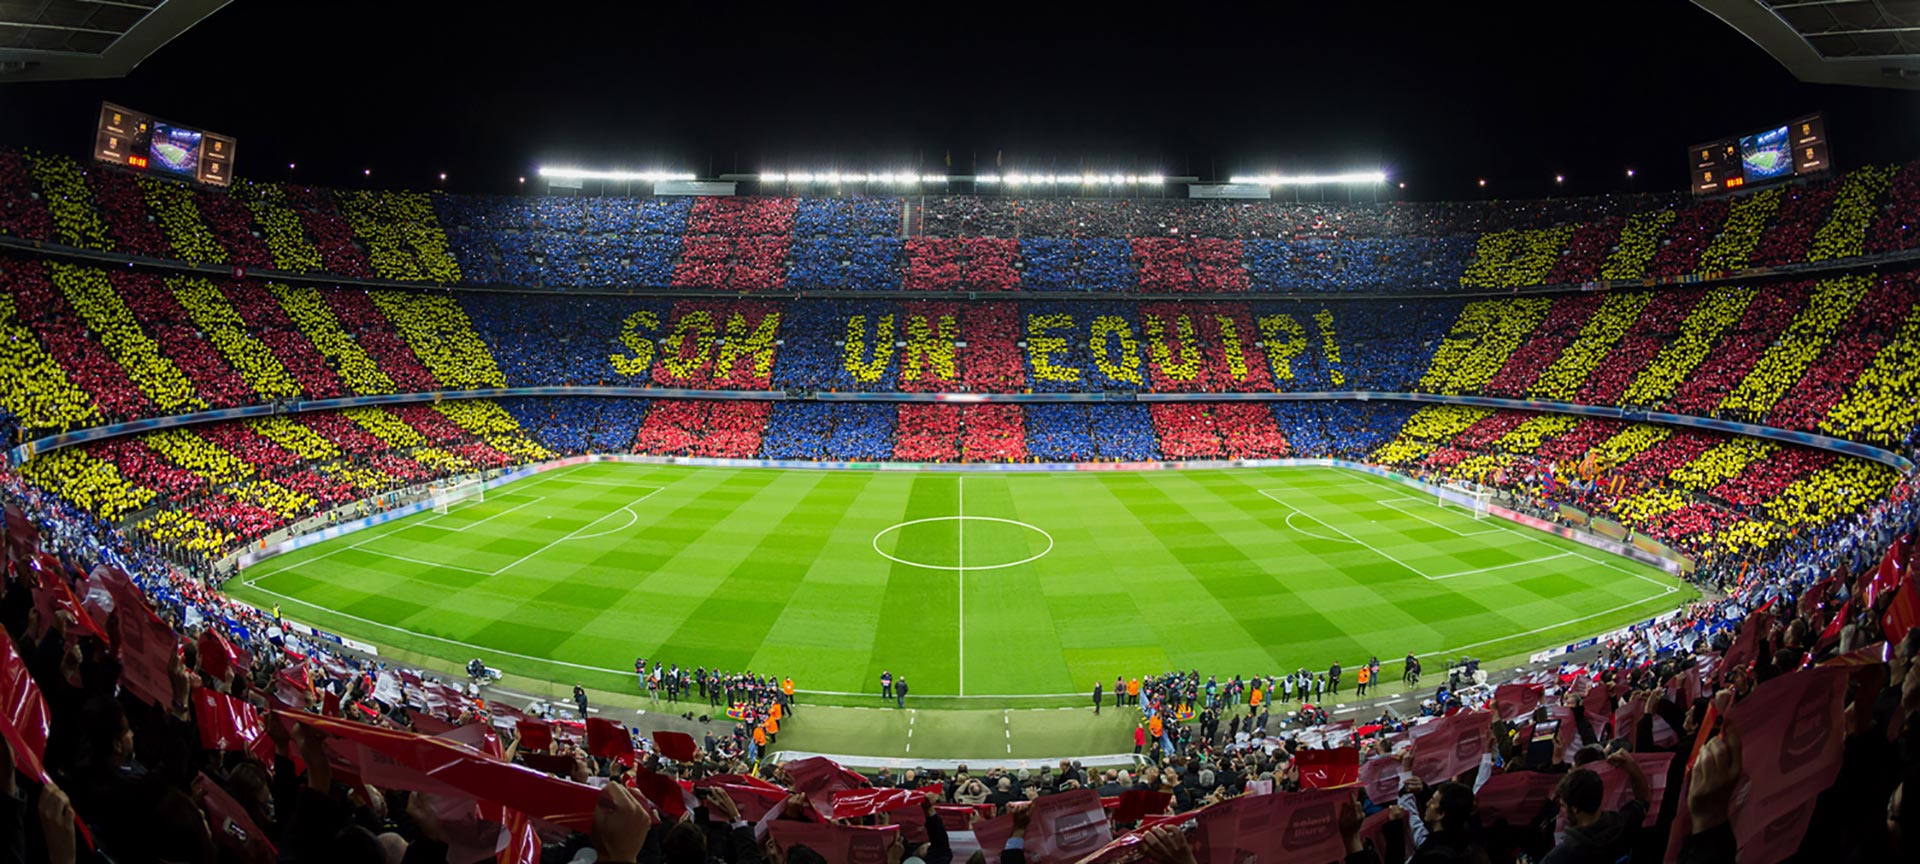 Spotify Camp Nou. Барселона. Футбольные стадионы Испании